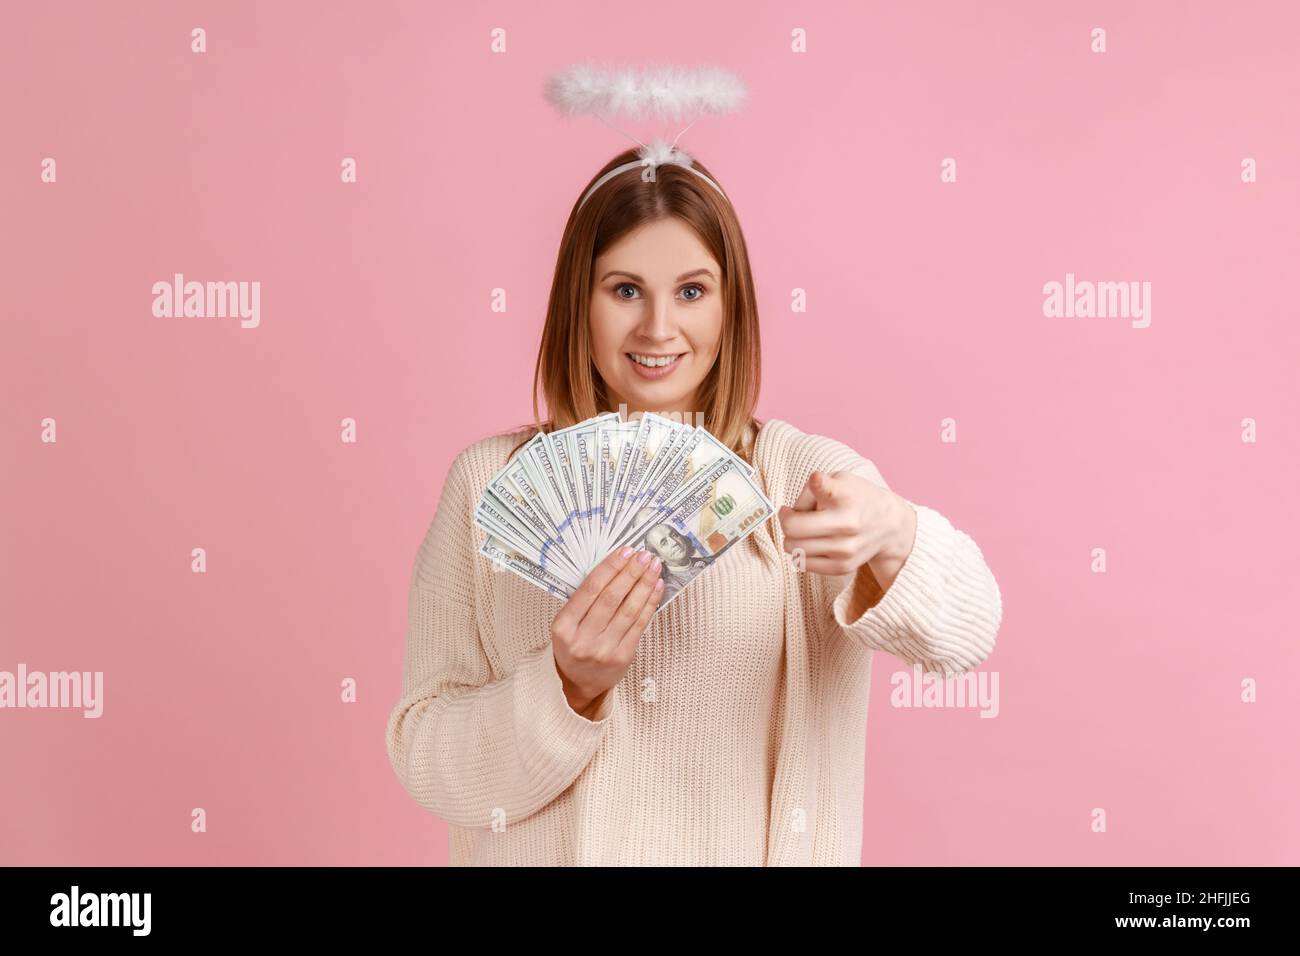 Portrait d'une femme gélique blonde satisfaite avec halo au-dessus de la tête pointant vers l'appareil photo et tenant un grand fan de billets de dollars, portant un chandail blanc.Studio d'intérieur isolé sur fond rose. Banque D'Images